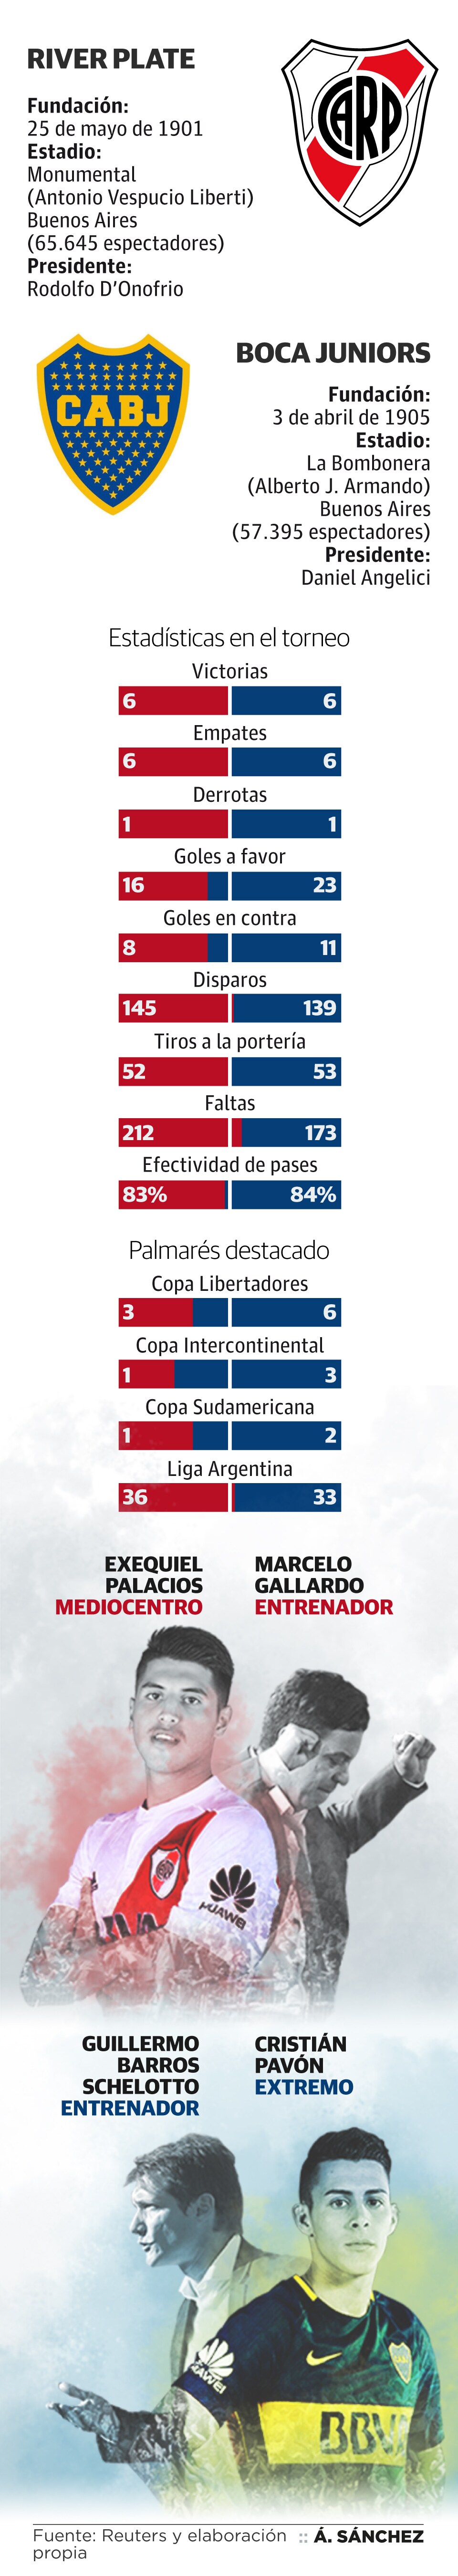 A los finalistas les separan tres títulos de la Copa Libertadores